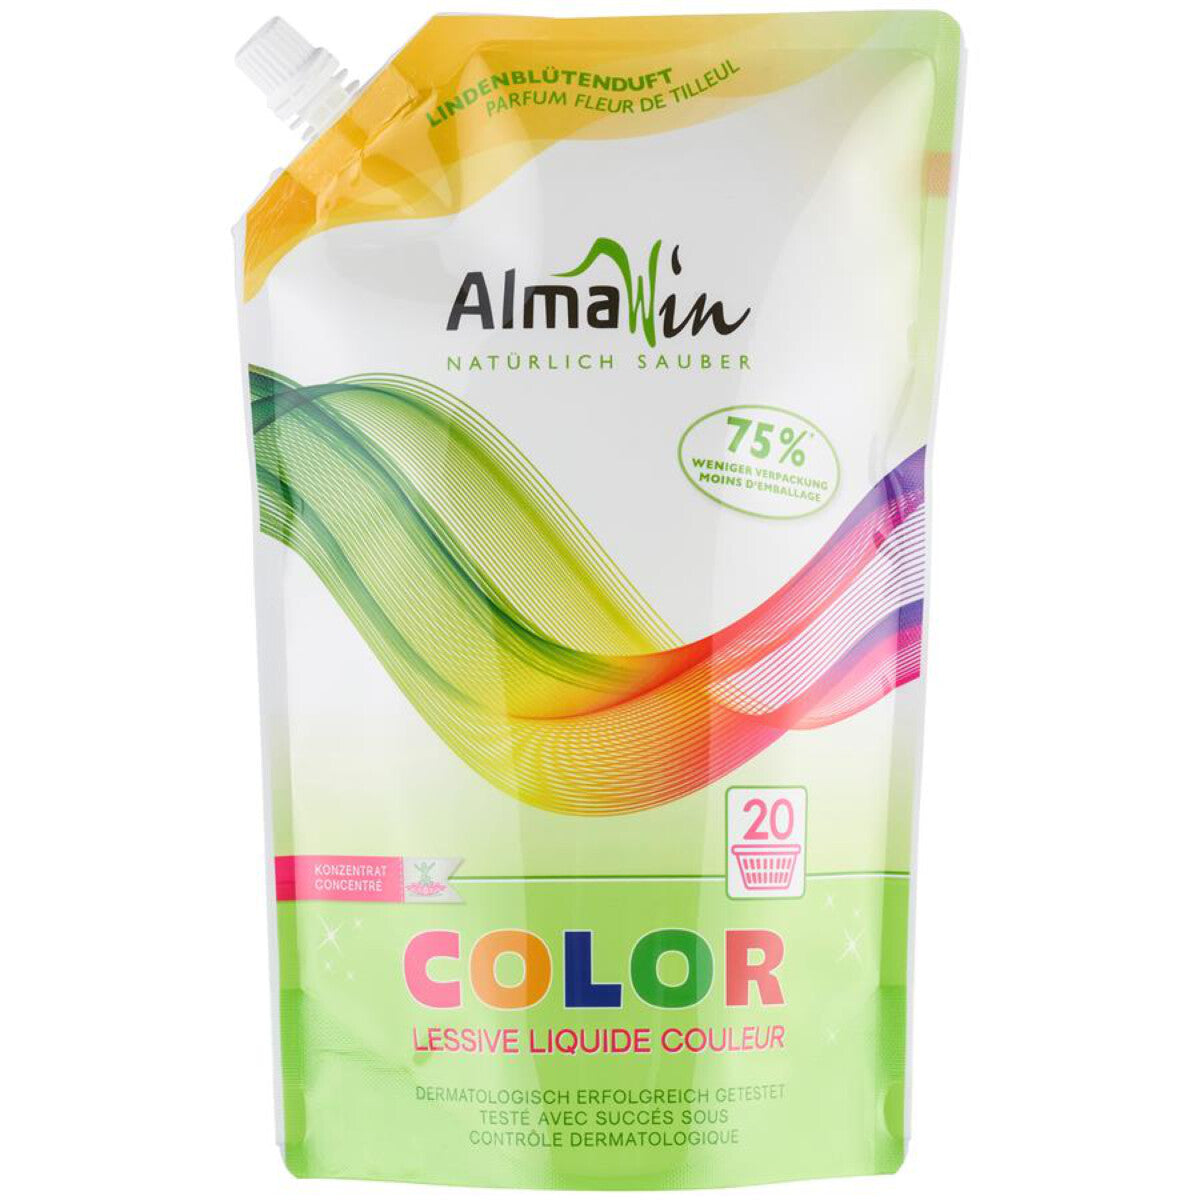 ALMA WIN Color Lindenblüte, 1,5 l